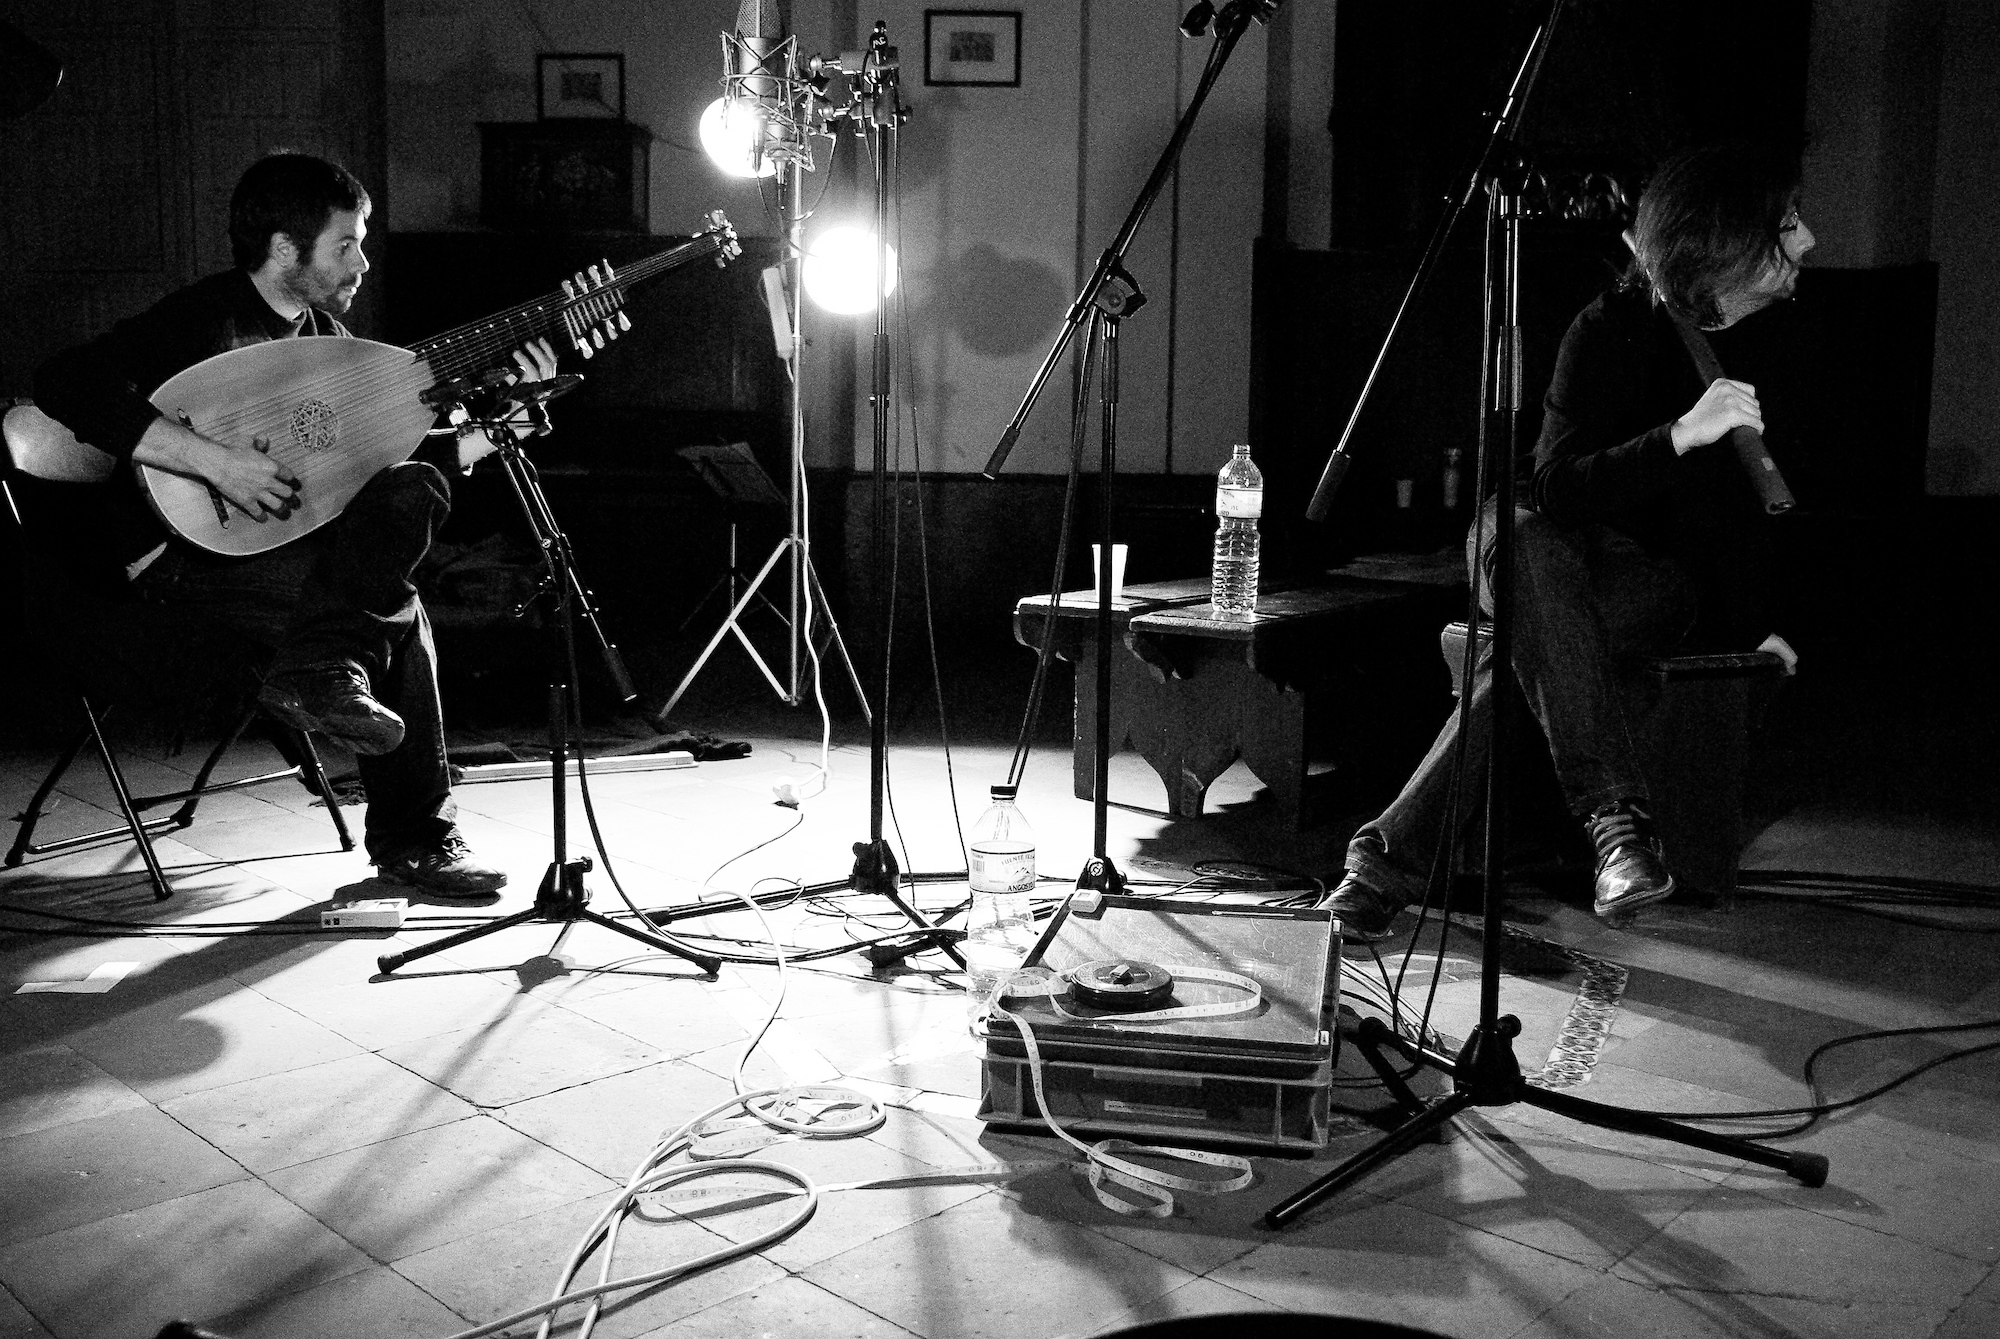 Miguel Rincón & Vicente Parrilla durante la sesión de grabación de la improvisación sobre *passacaglia* (track 14)